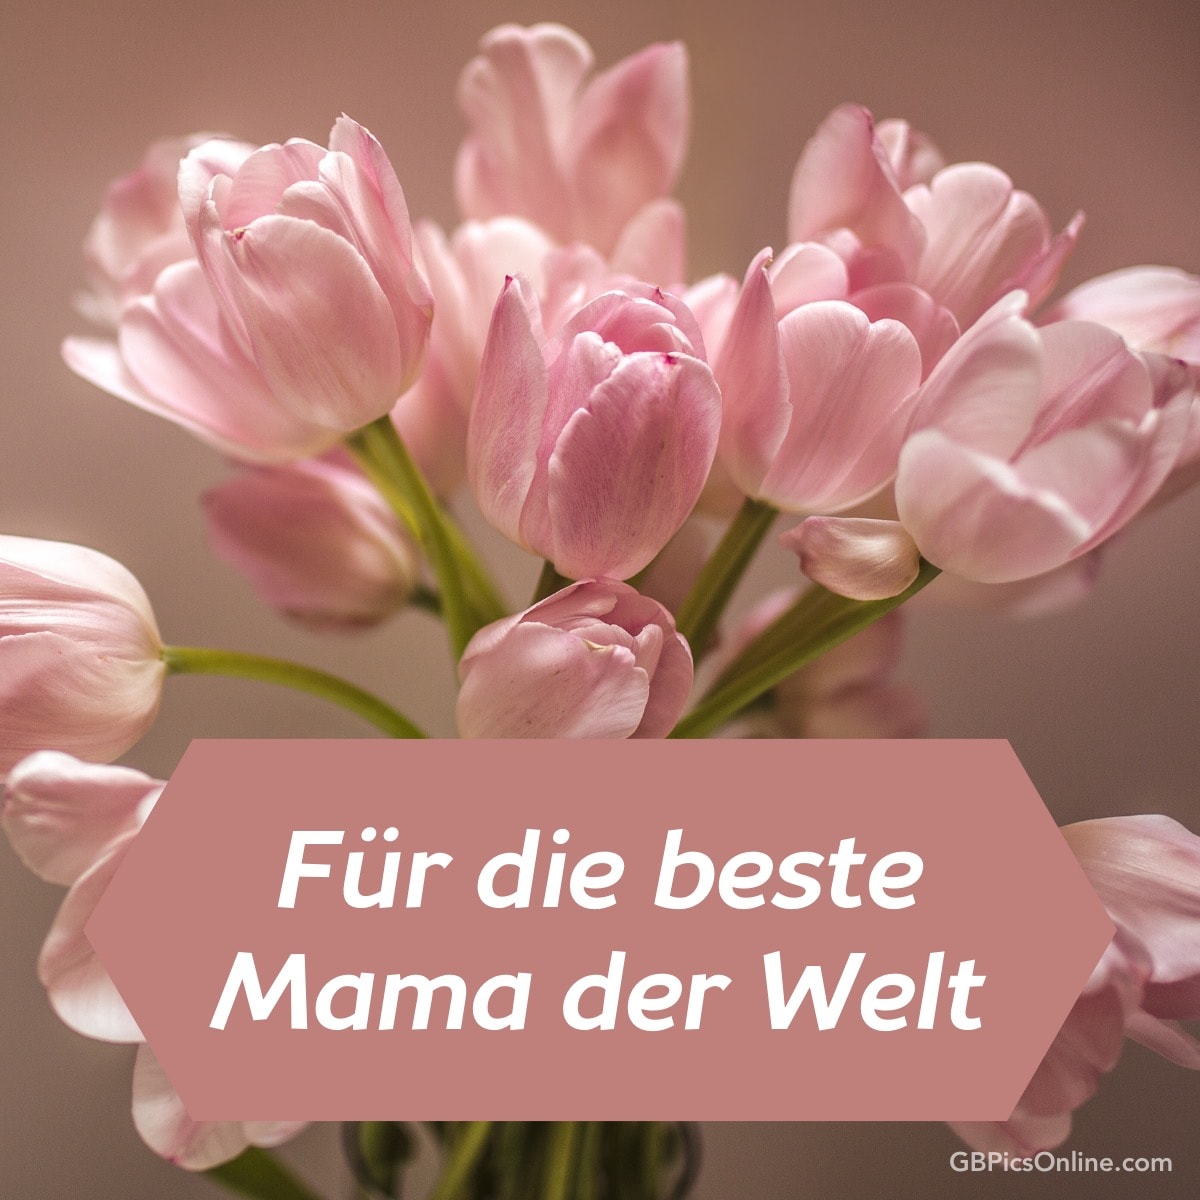 Rosa Tulpen mit Text: „Für die beste Mama der Welt“